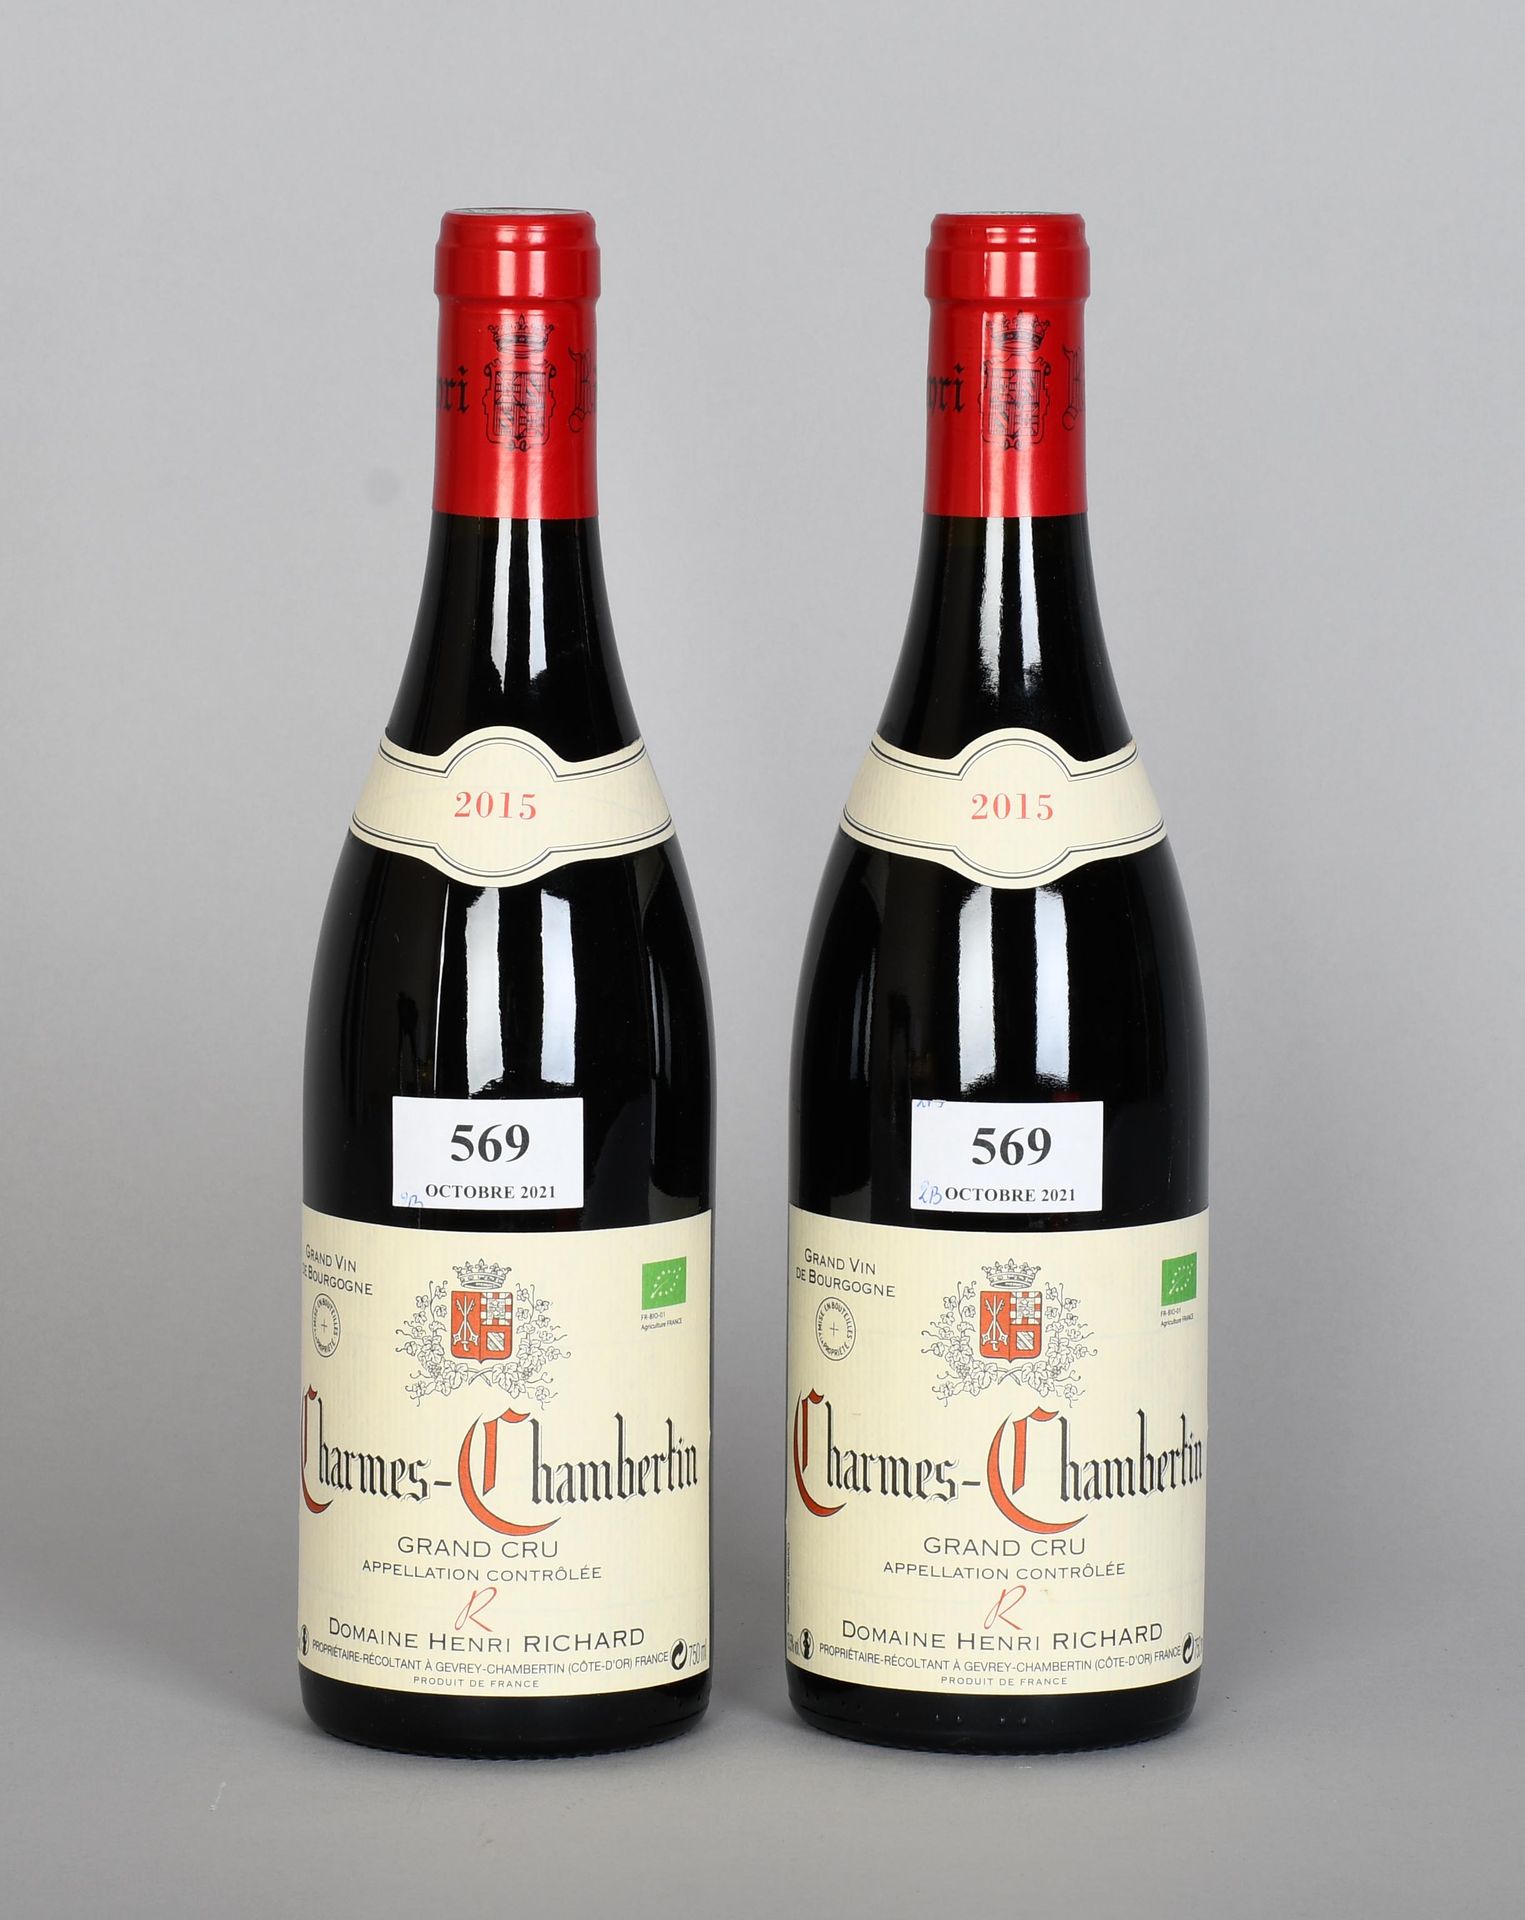 Null Charmes-Chambertin 2015 - Mise propriété - Deux bouteilles de vin

Grand cr&hellip;